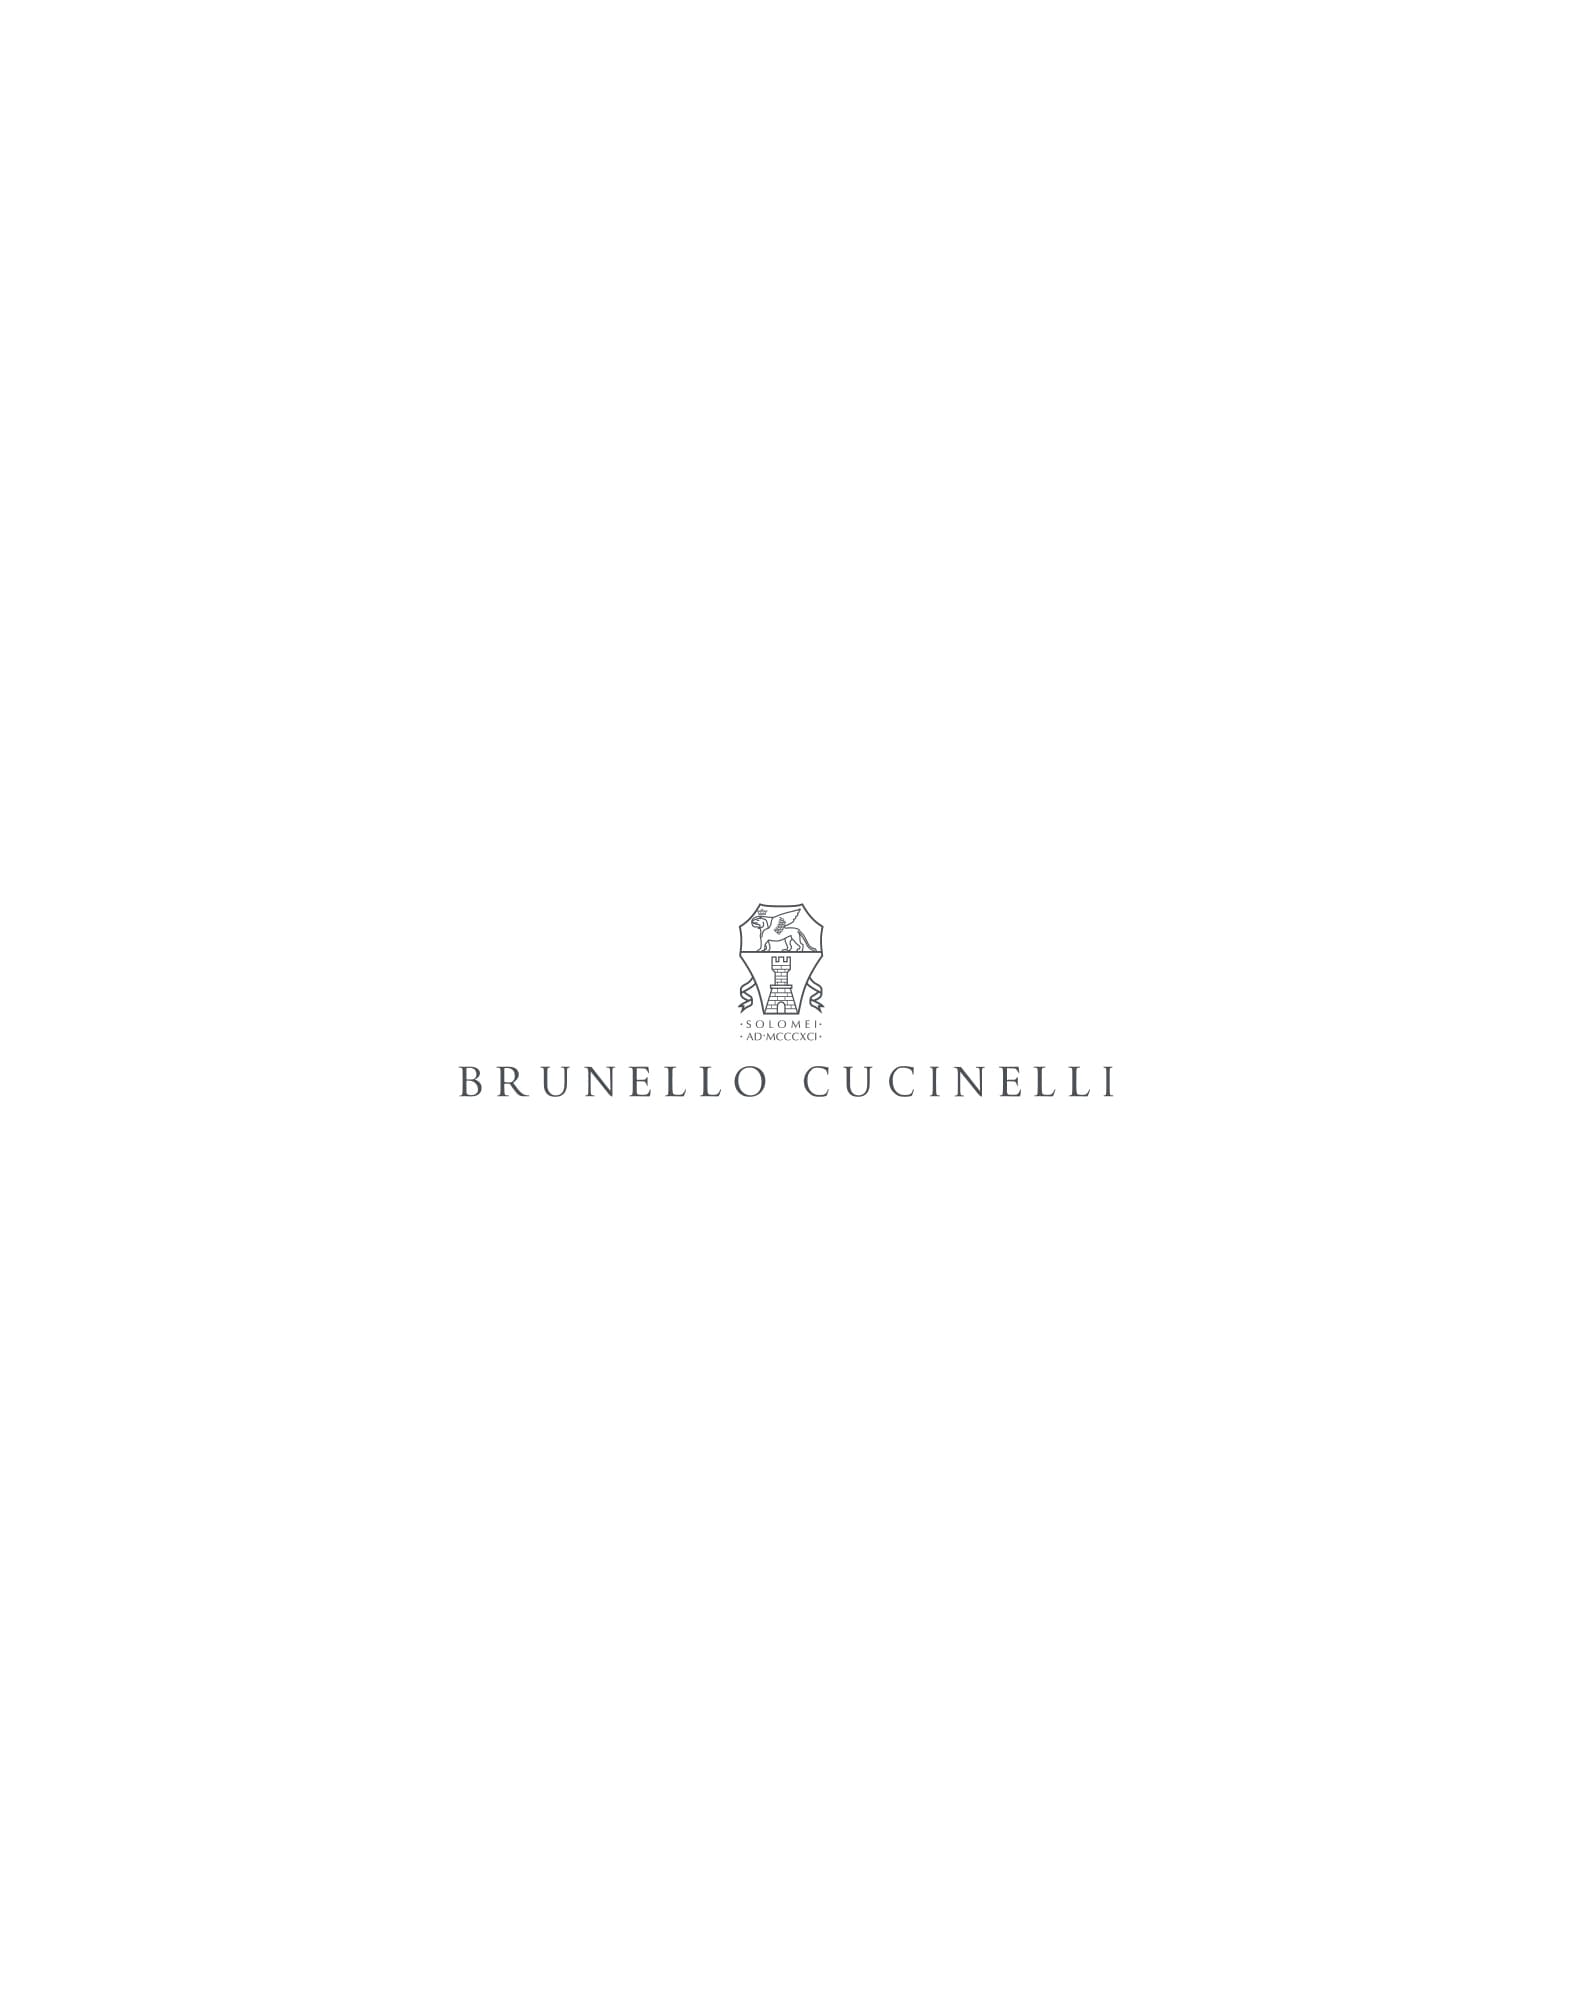 Flannel blazer Pearl Grey Man - Brunello Cucinelli 